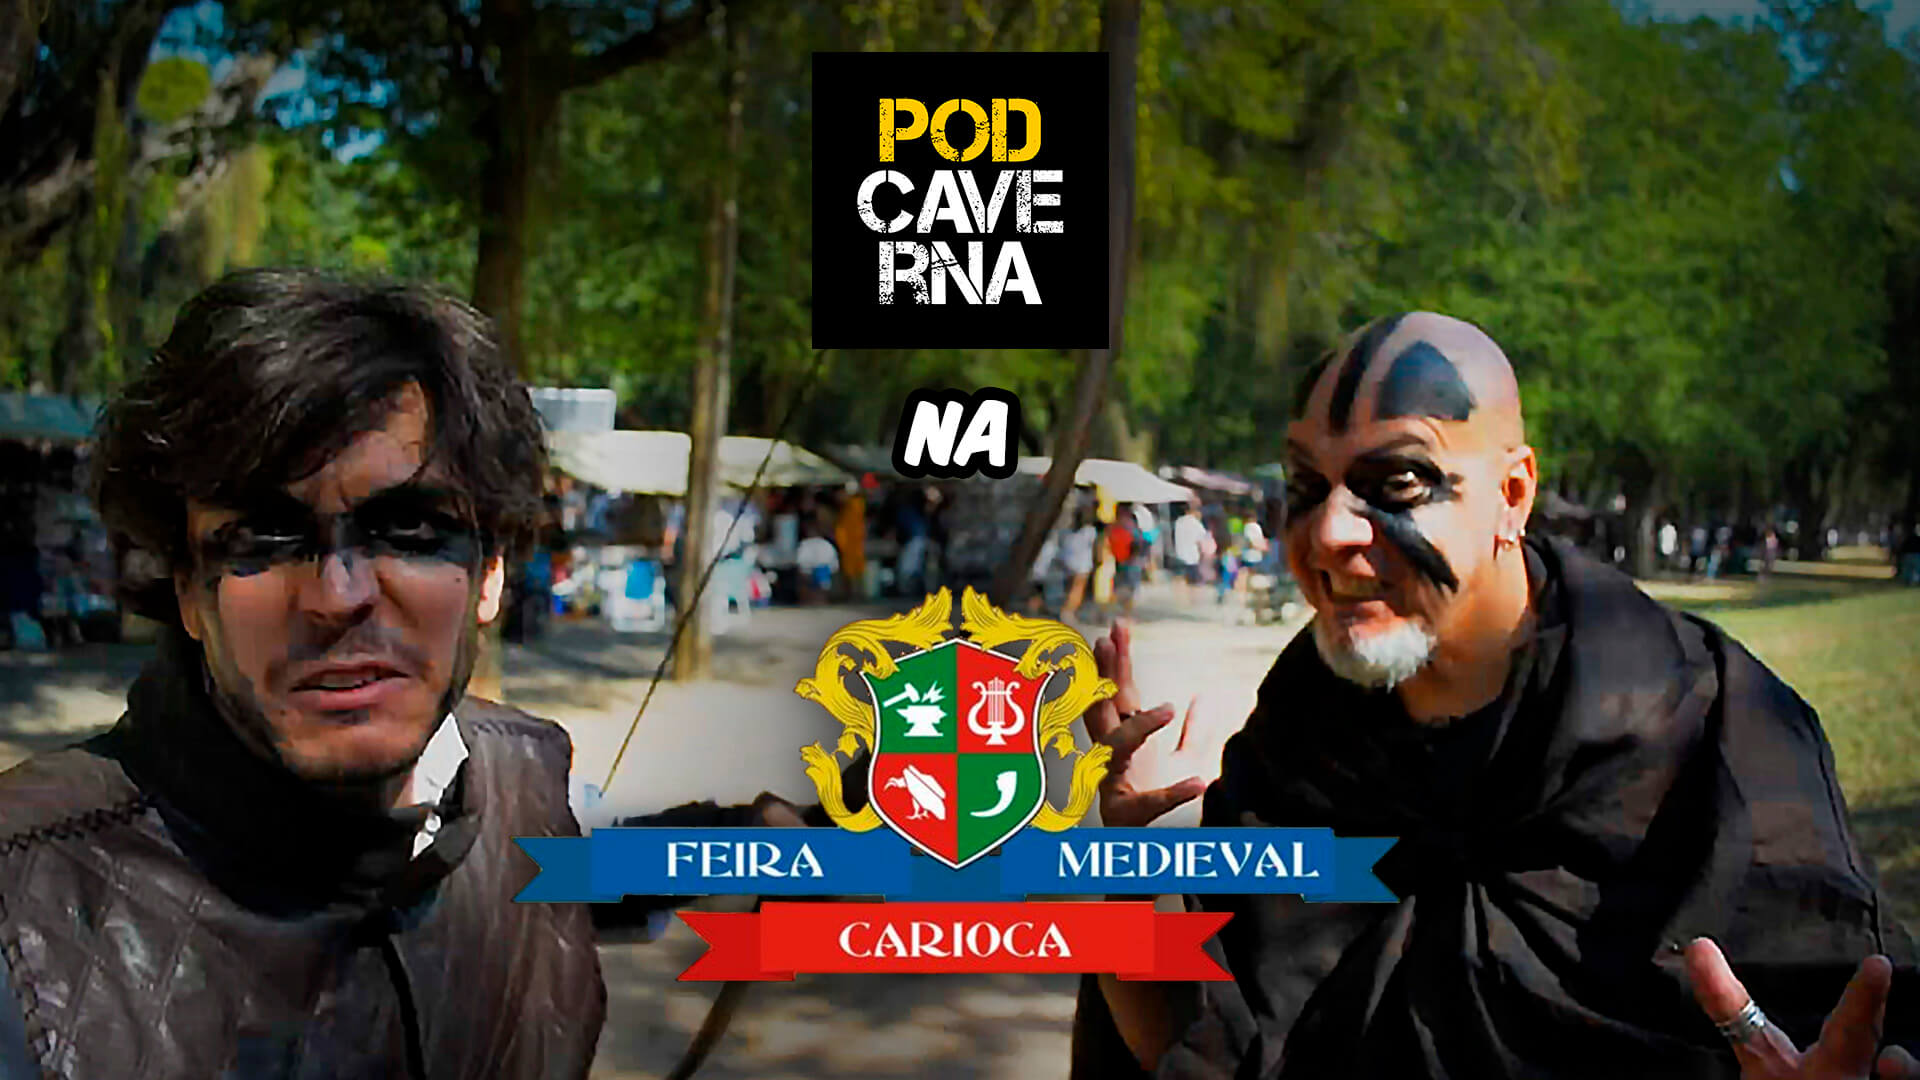 Podcaverna na V Feira Medieval Carioca 2018